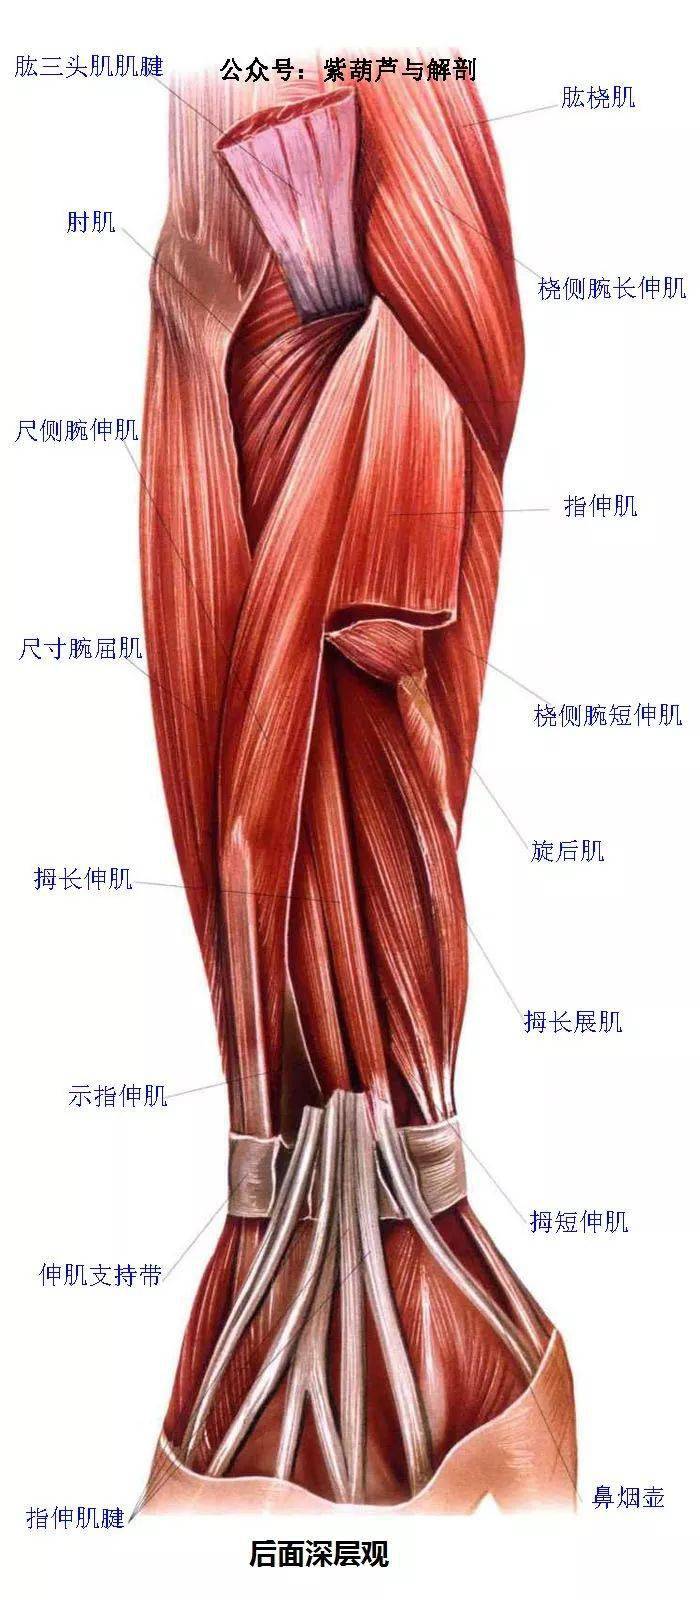 高清前臂与手部解剖肌肉图谱